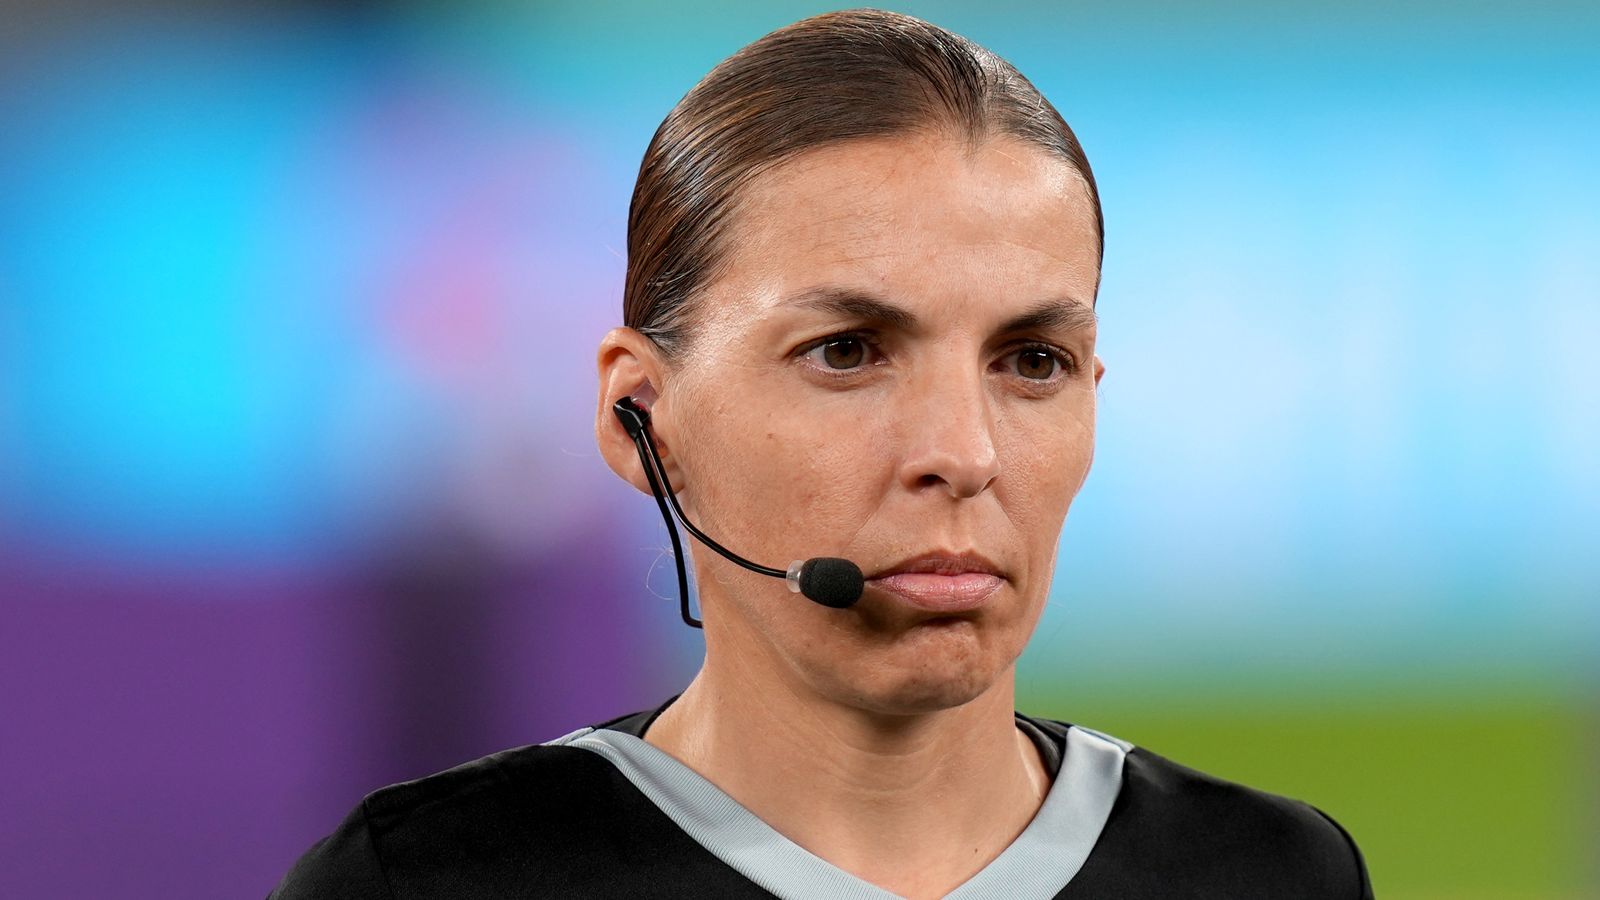 Pasaules kauss 2022: Stefānija Fraparta kļūst par pirmo tiesnesi sievieti turnīrā Vācijā pret Kostariku |  futbola ziņas